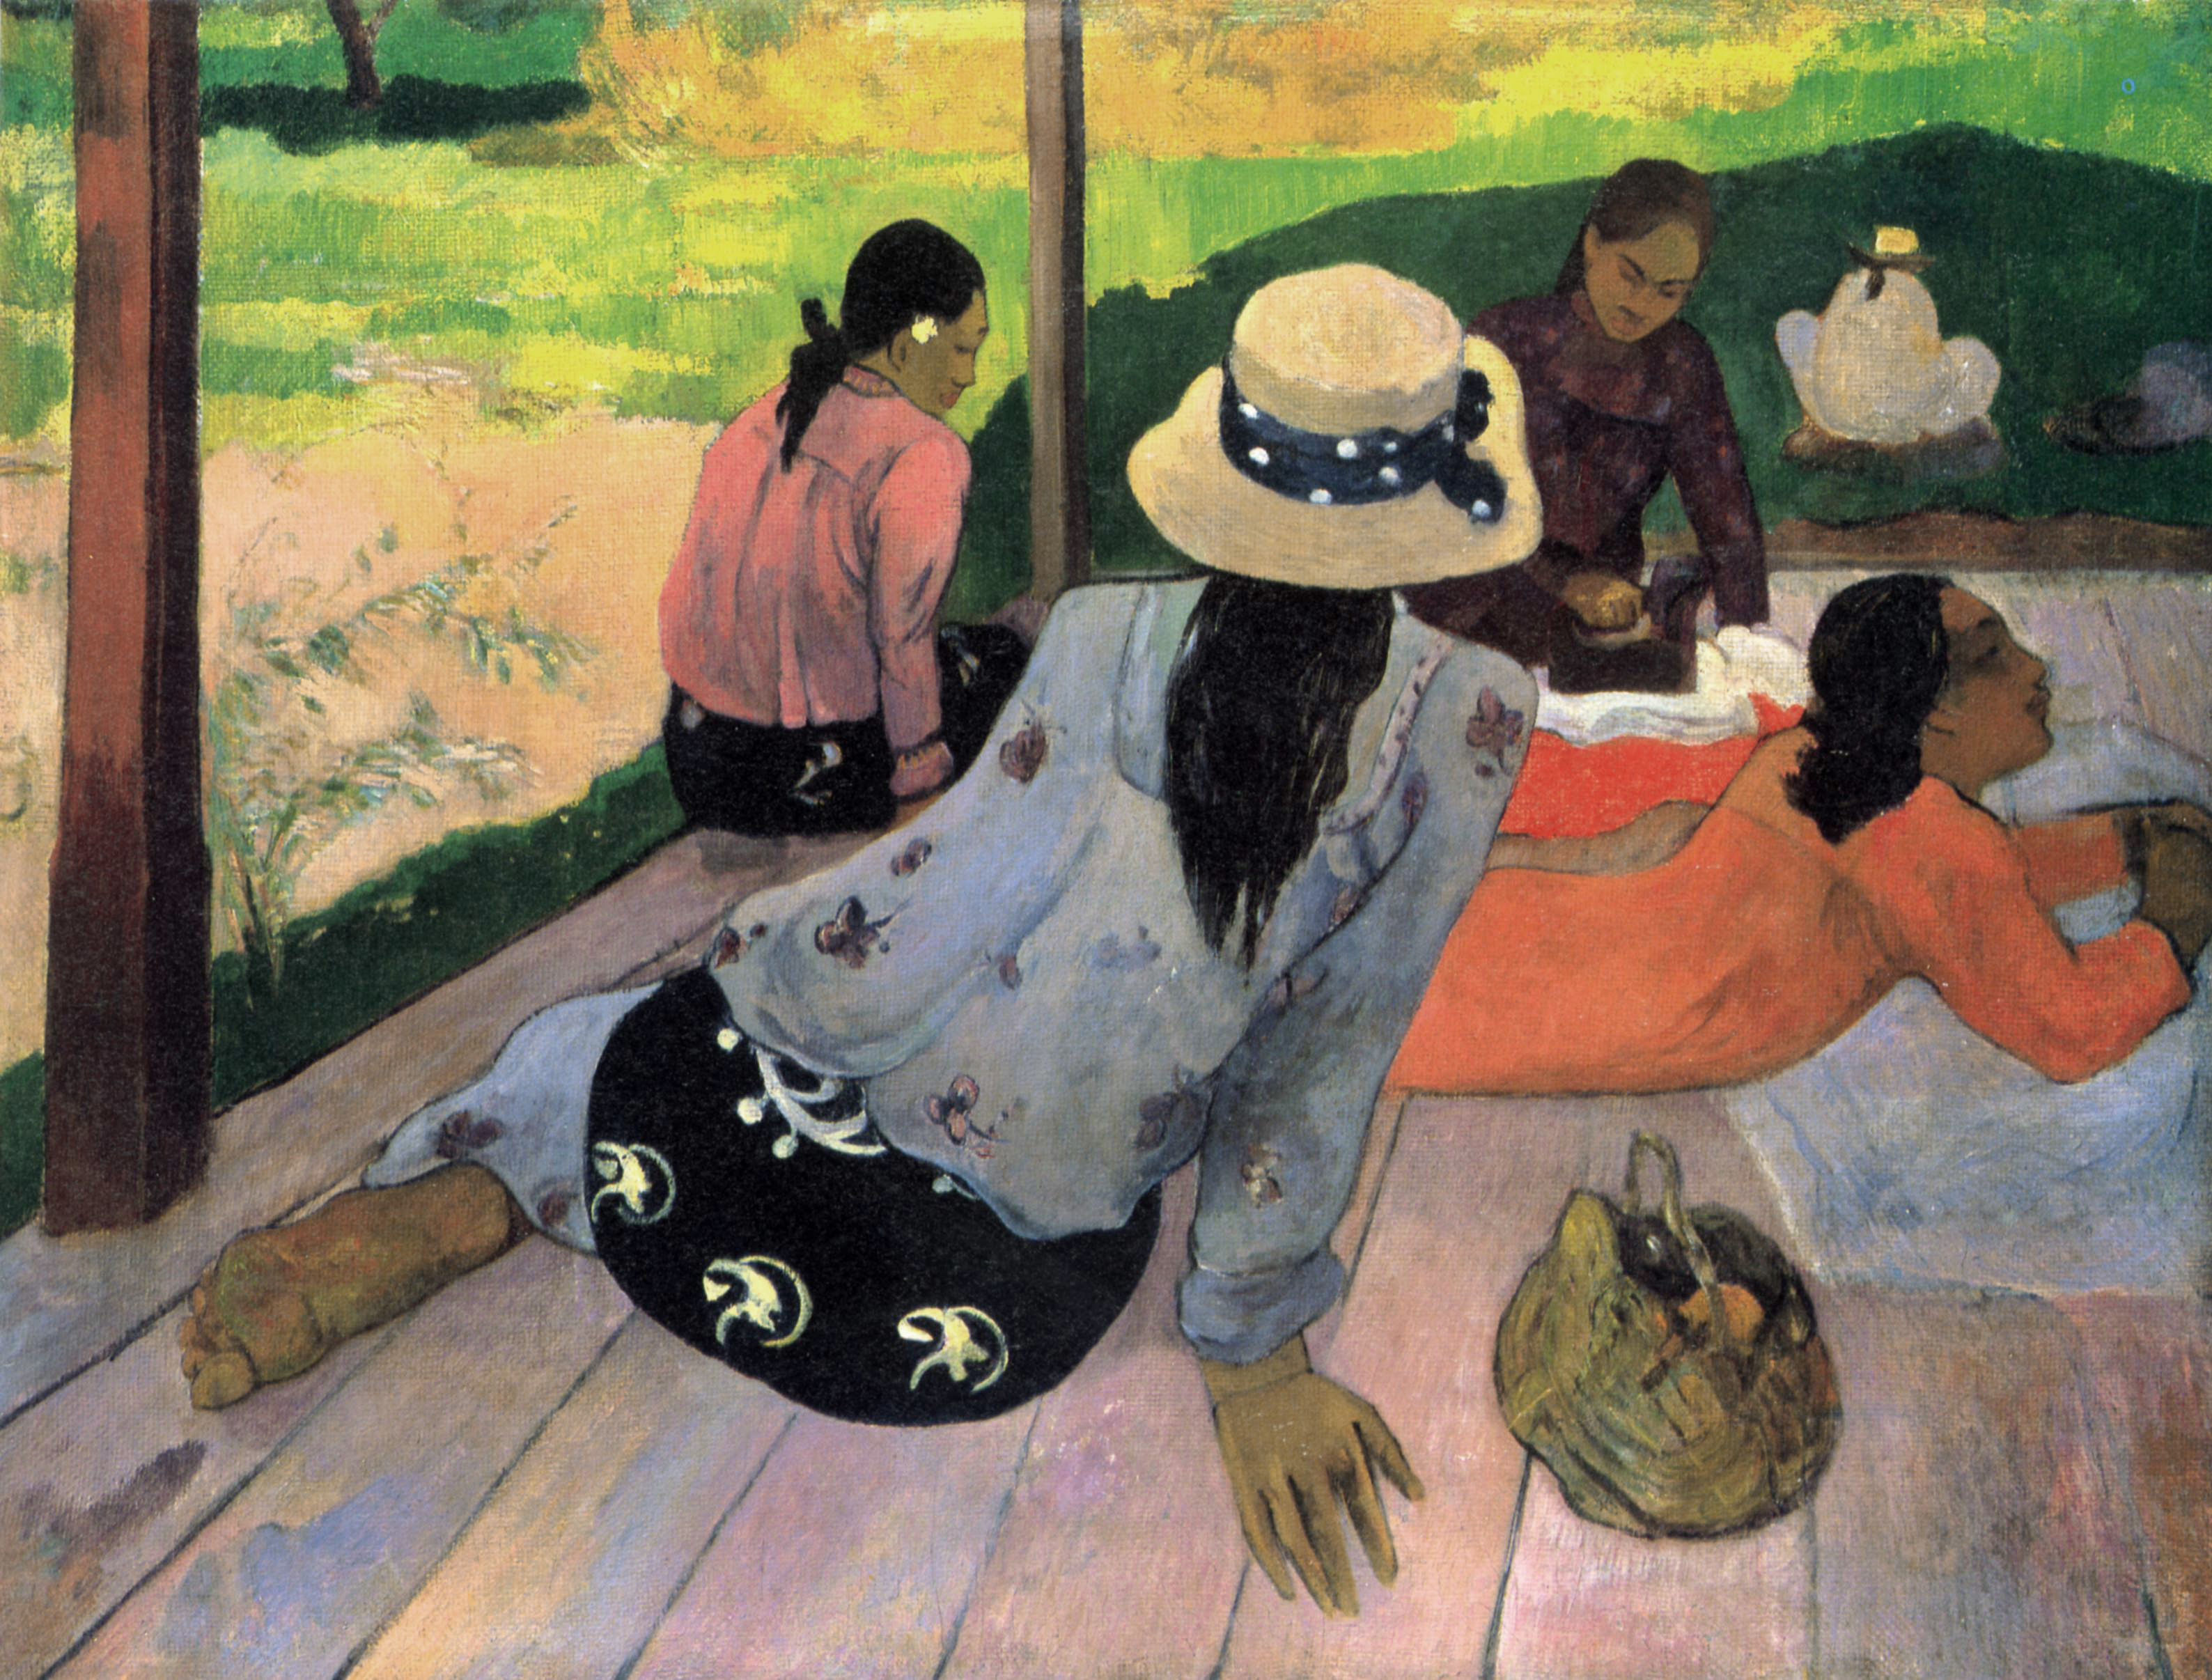 Siesta byla i častým námětem uměleckých děl. V tomto případě zachytil odpočívající ženy Paul Gauguin.